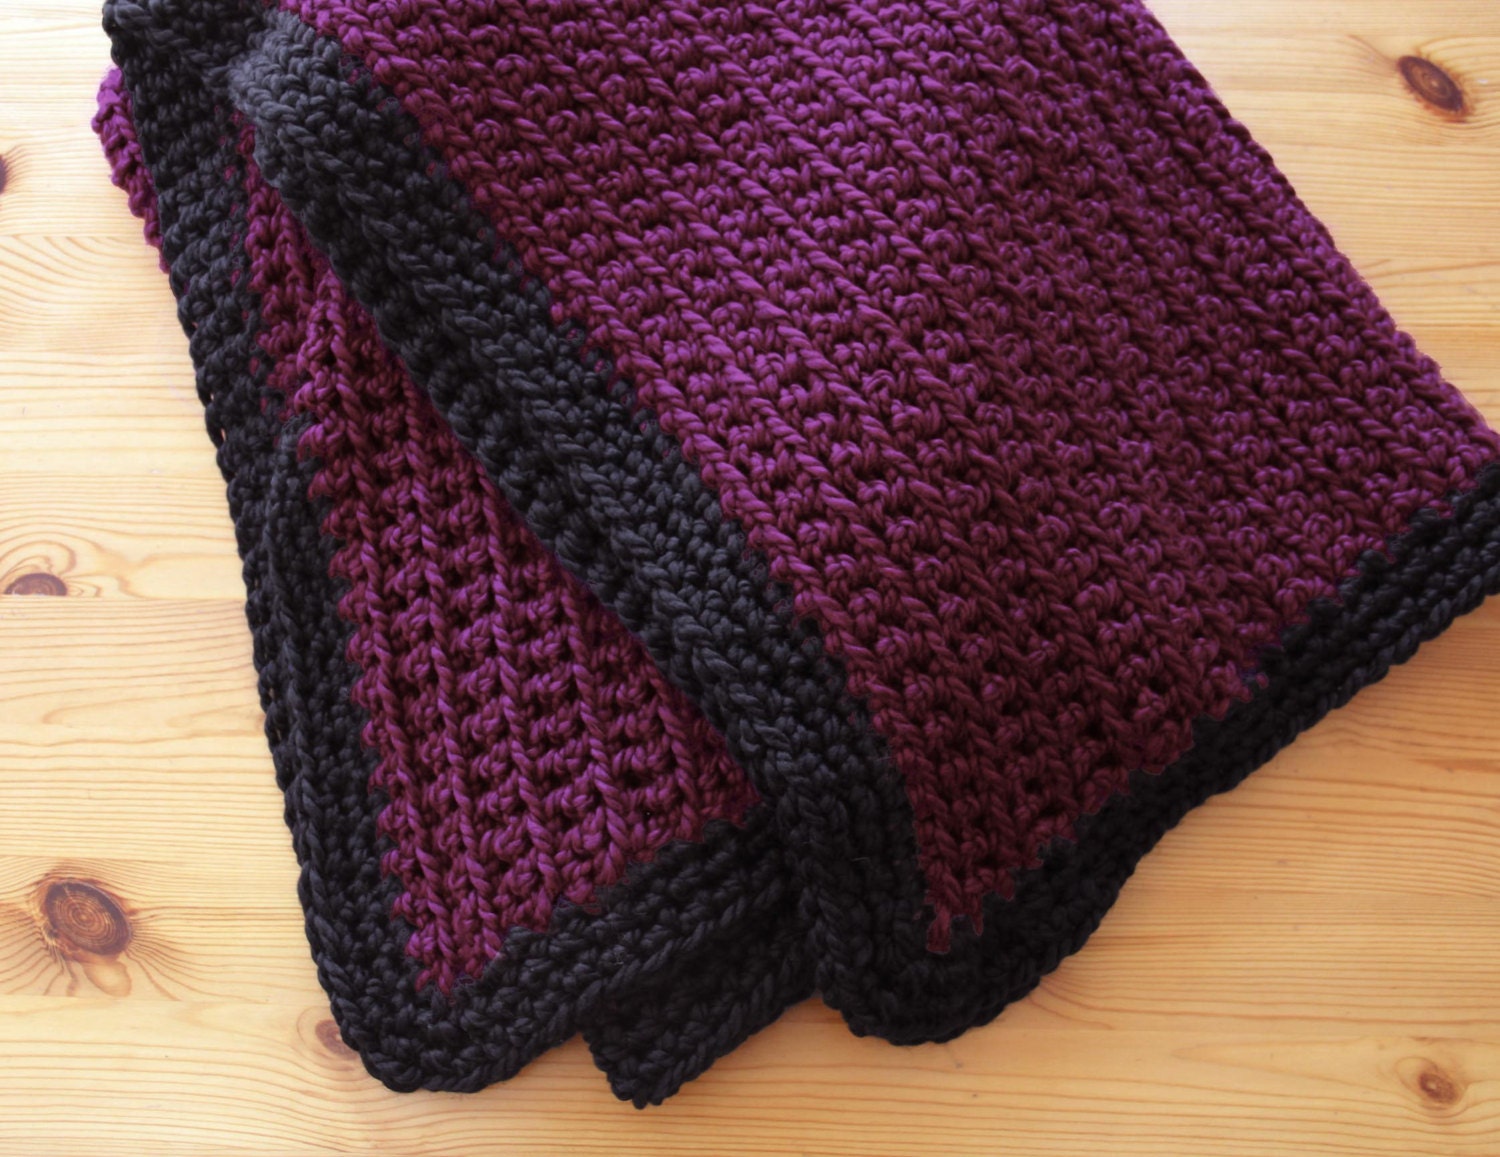 Fat crochet blanket